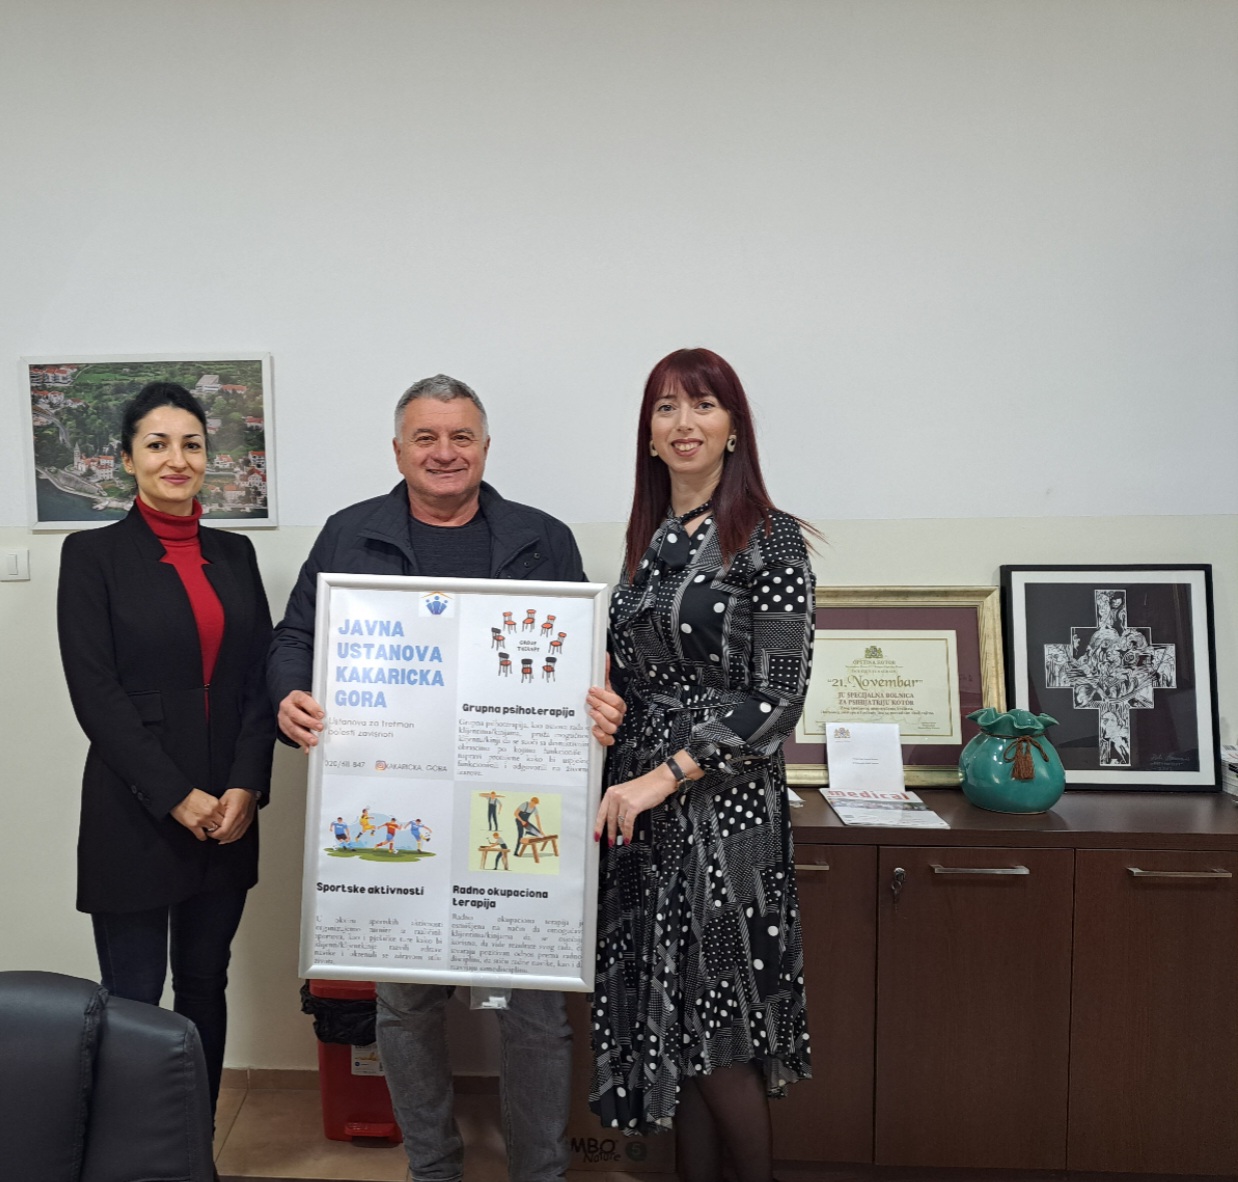 Potpisan Memorandum o saradnji između JU Kakaricka gora i ZU Specijalna bolnica za psihijatriju “Dobrota”